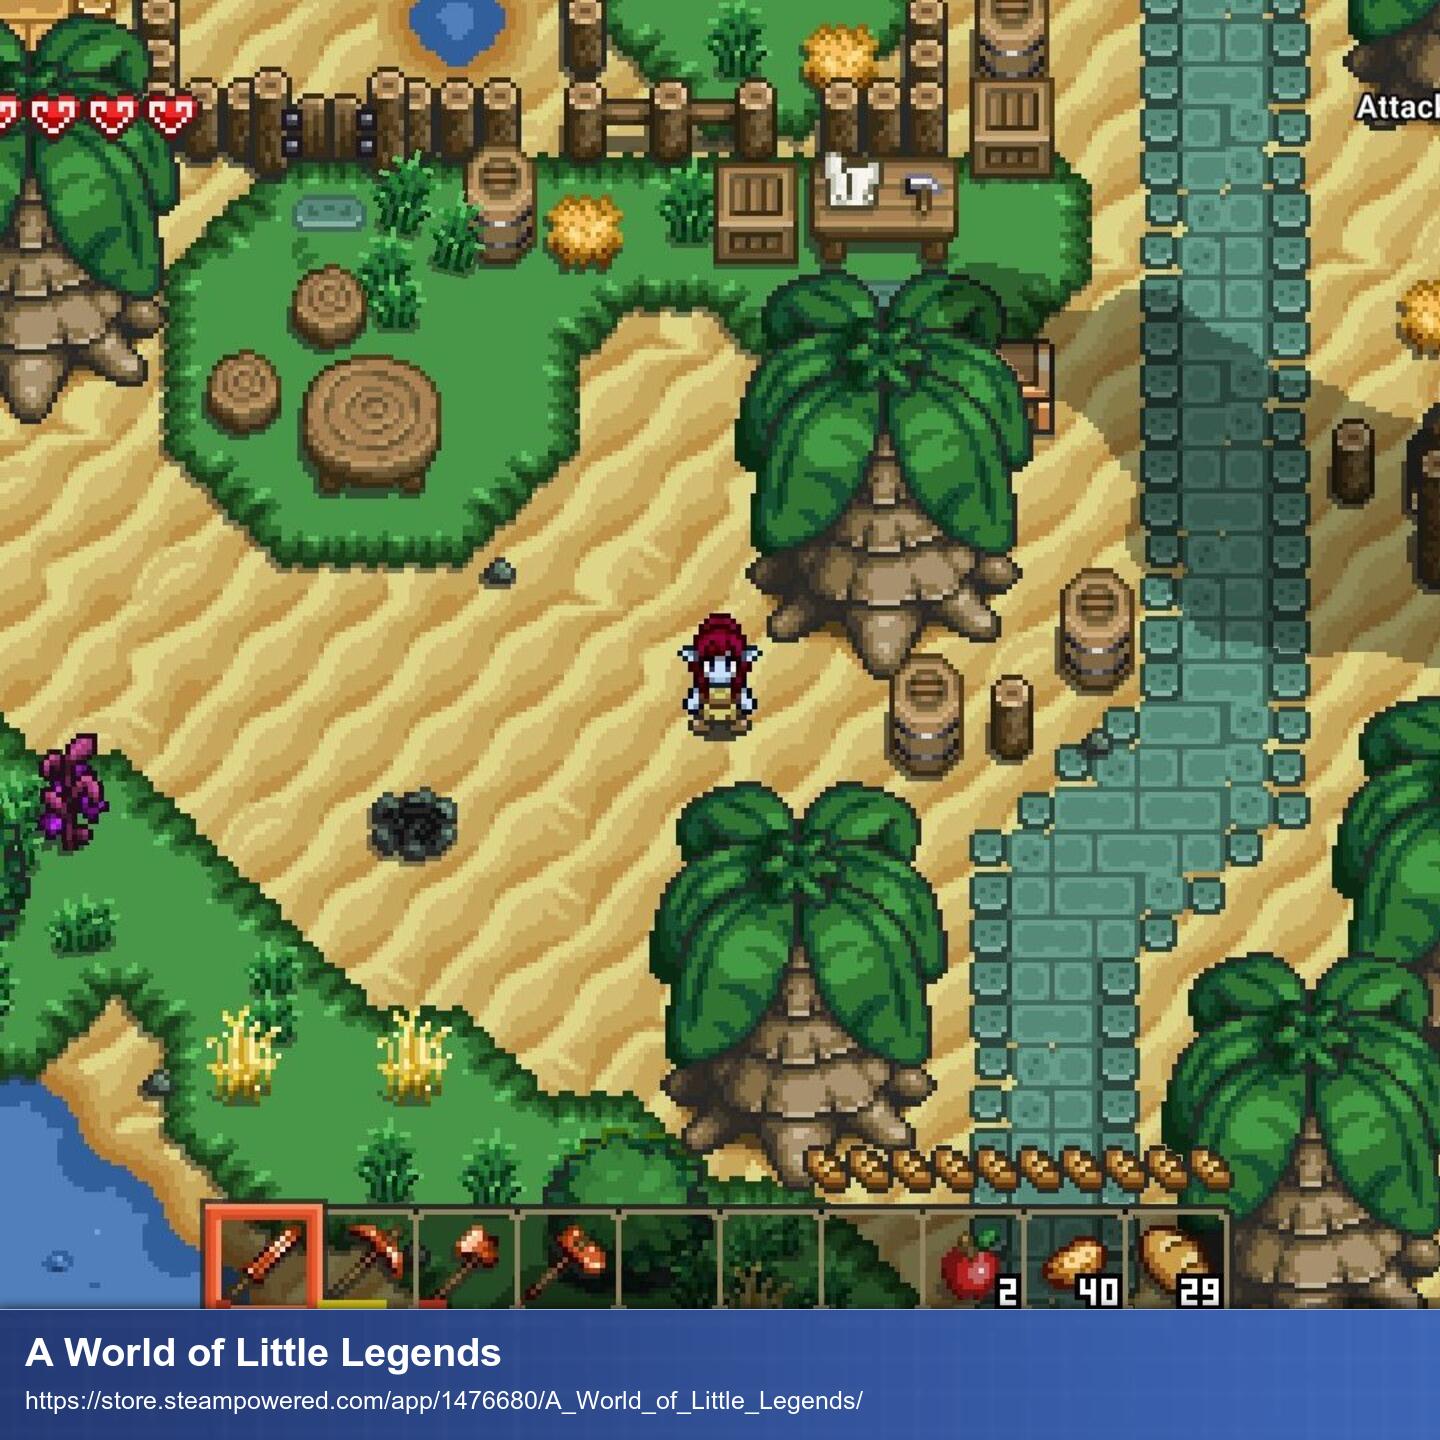 Vogelperspektive auf die Pixel-Welt des Spiels. Grüne Grassflächen und Sand wechseln sich ab. Dazwischen gibt es Palmen, Sträucher und eine Figur die man spielt.